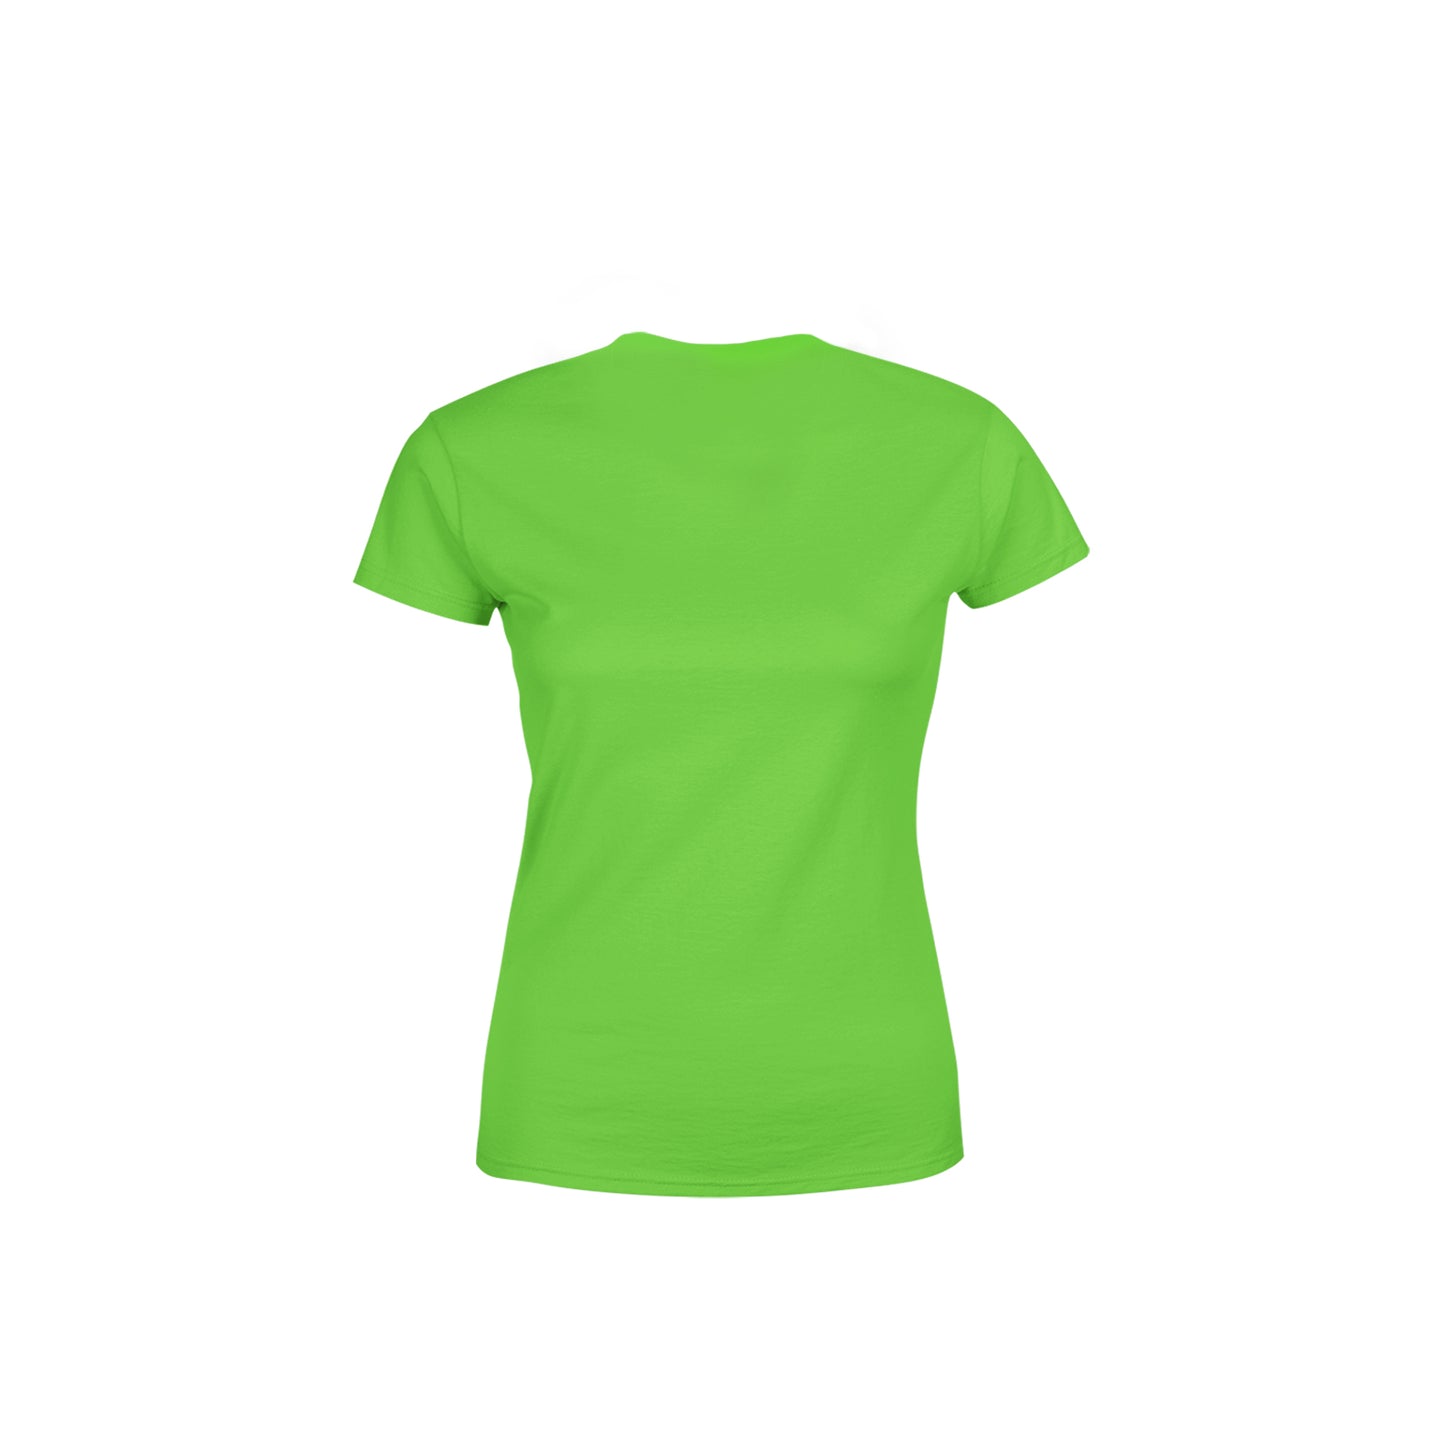 10 Number Women's T-Shirt (Liril Green)